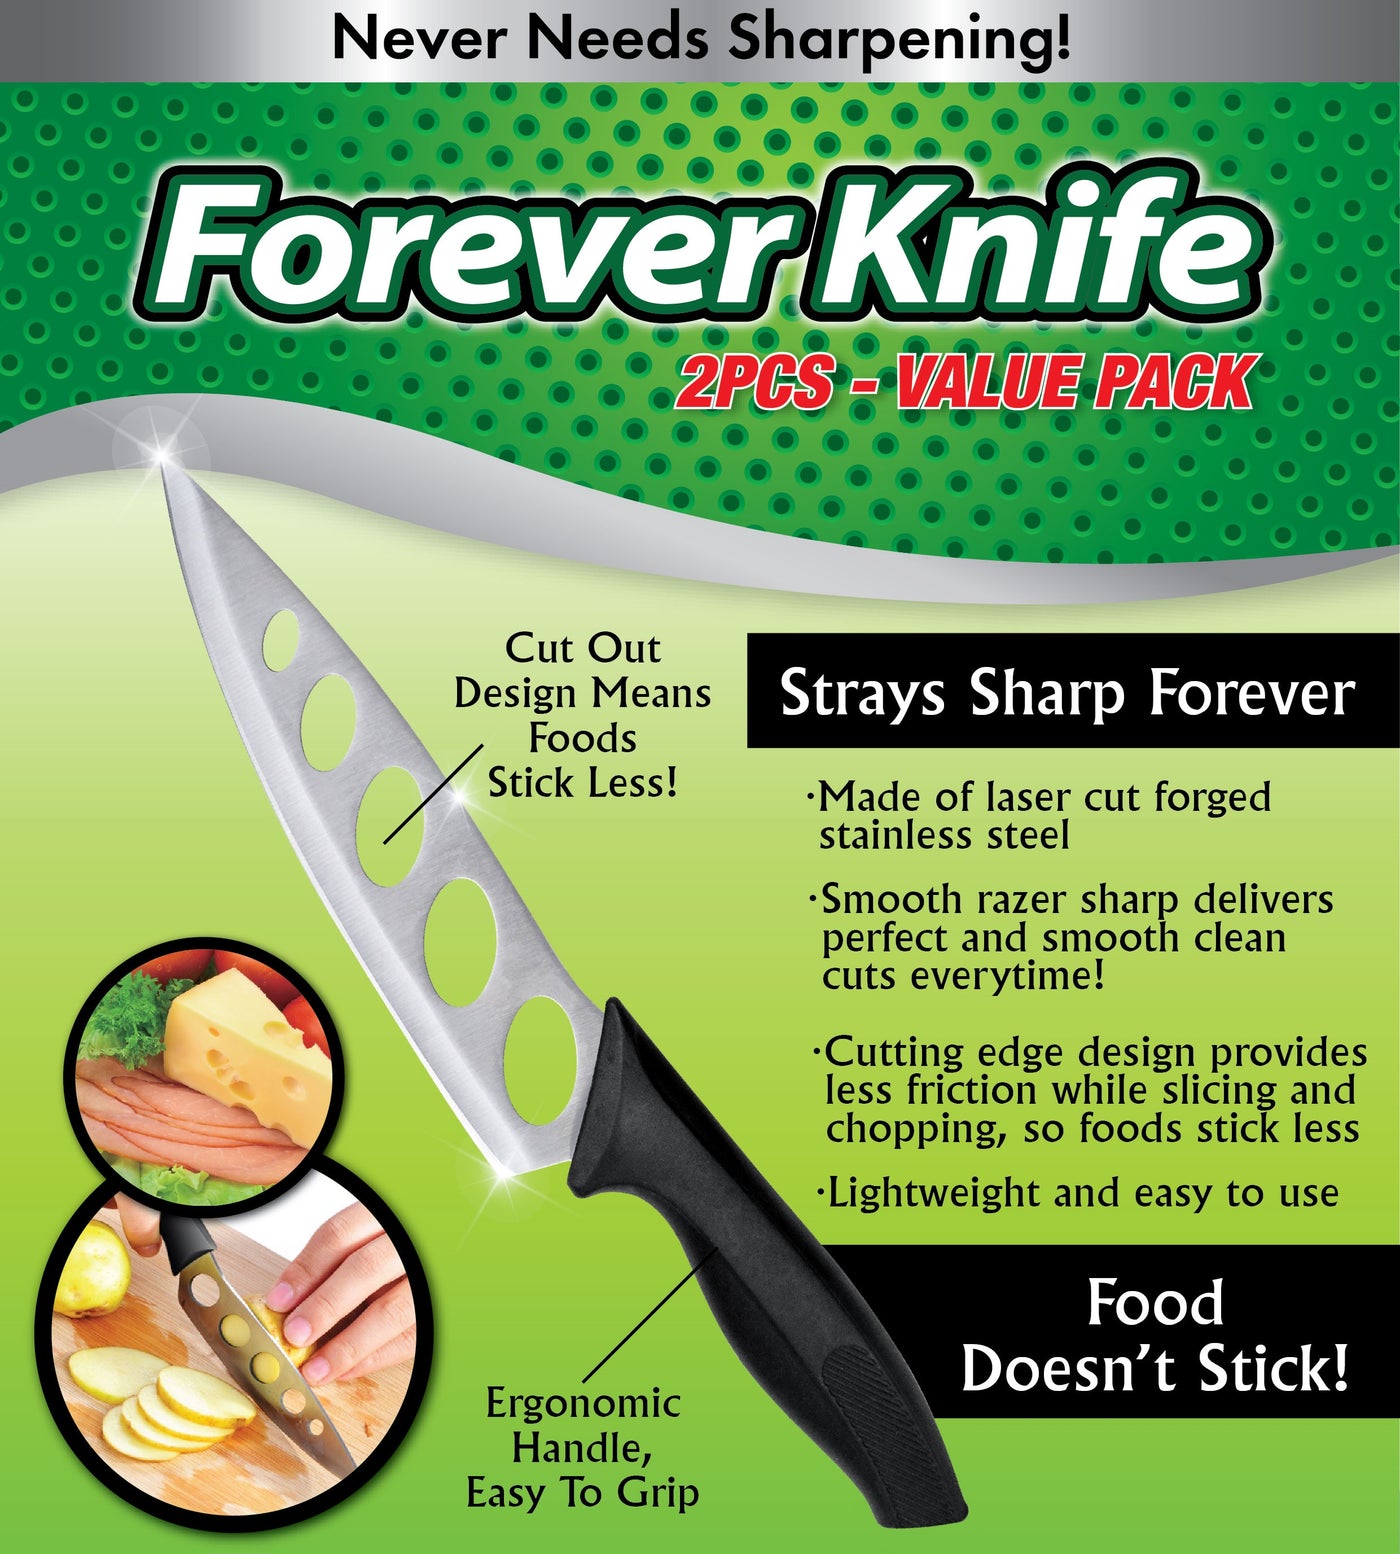 Forever Knife